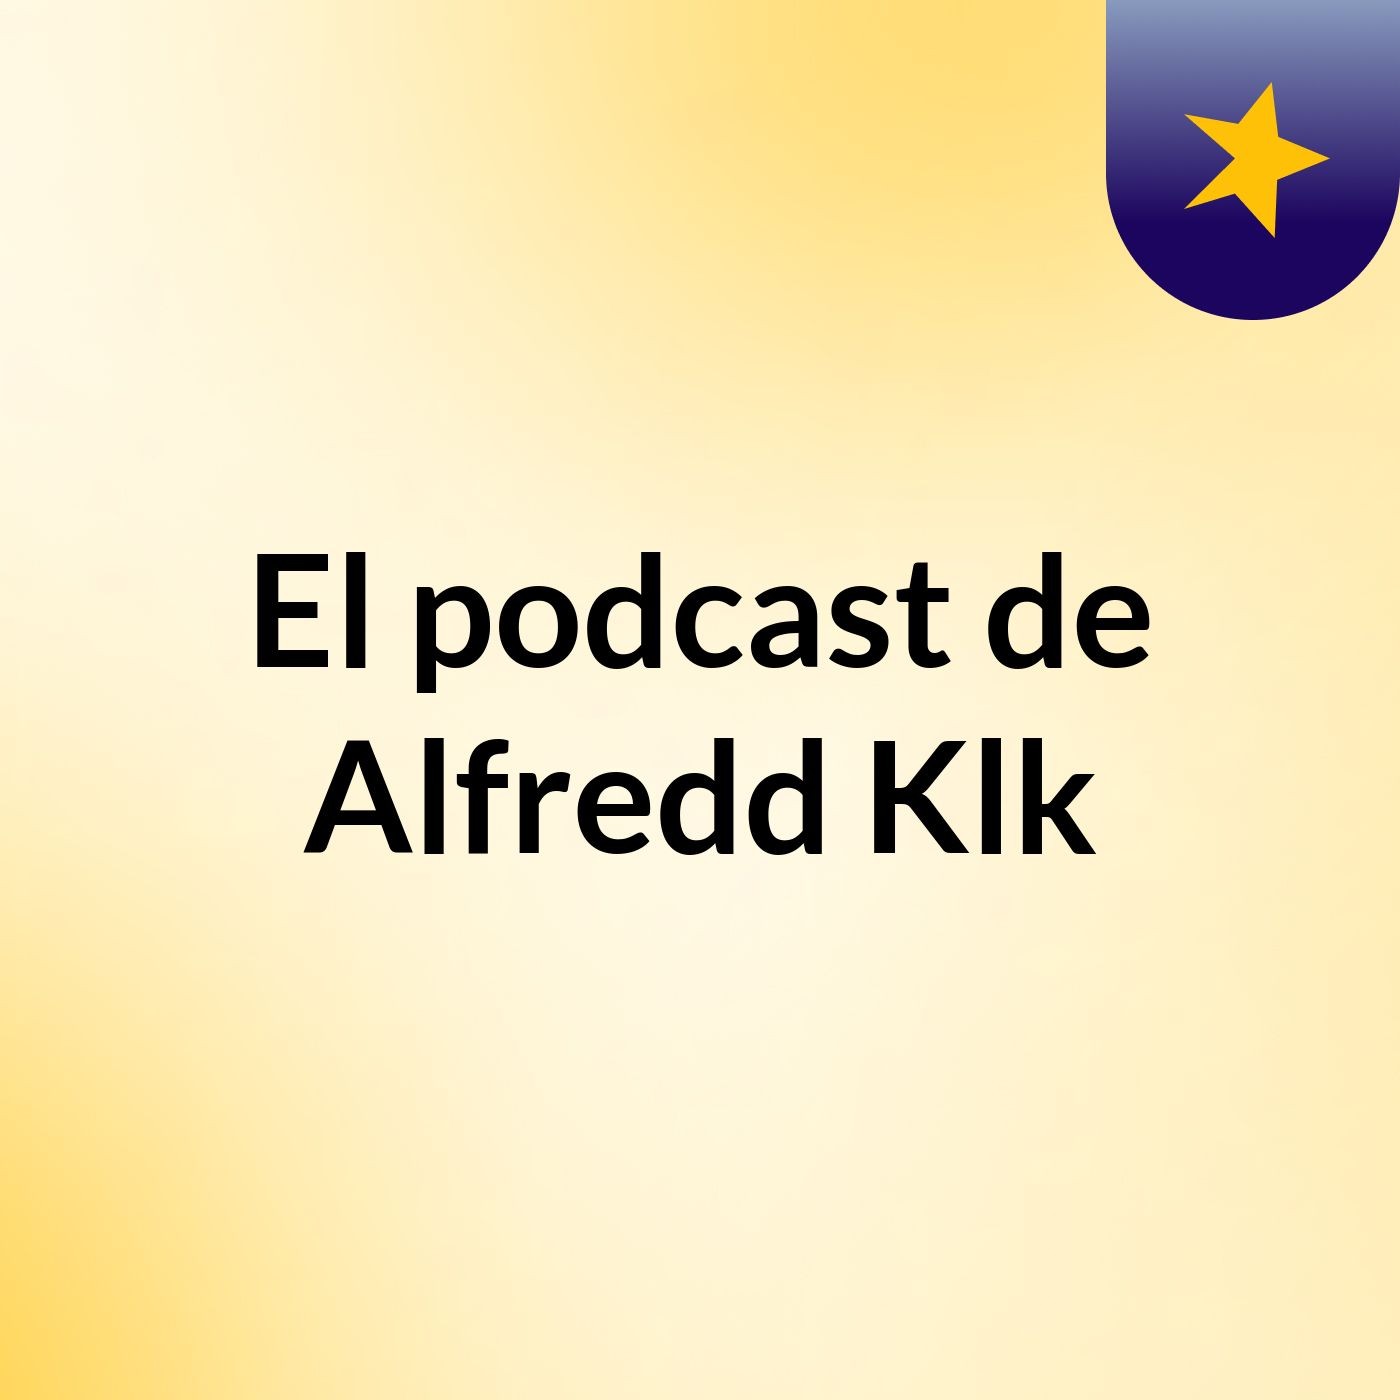 Episodio 3 - El podcast de Alfredd Klk